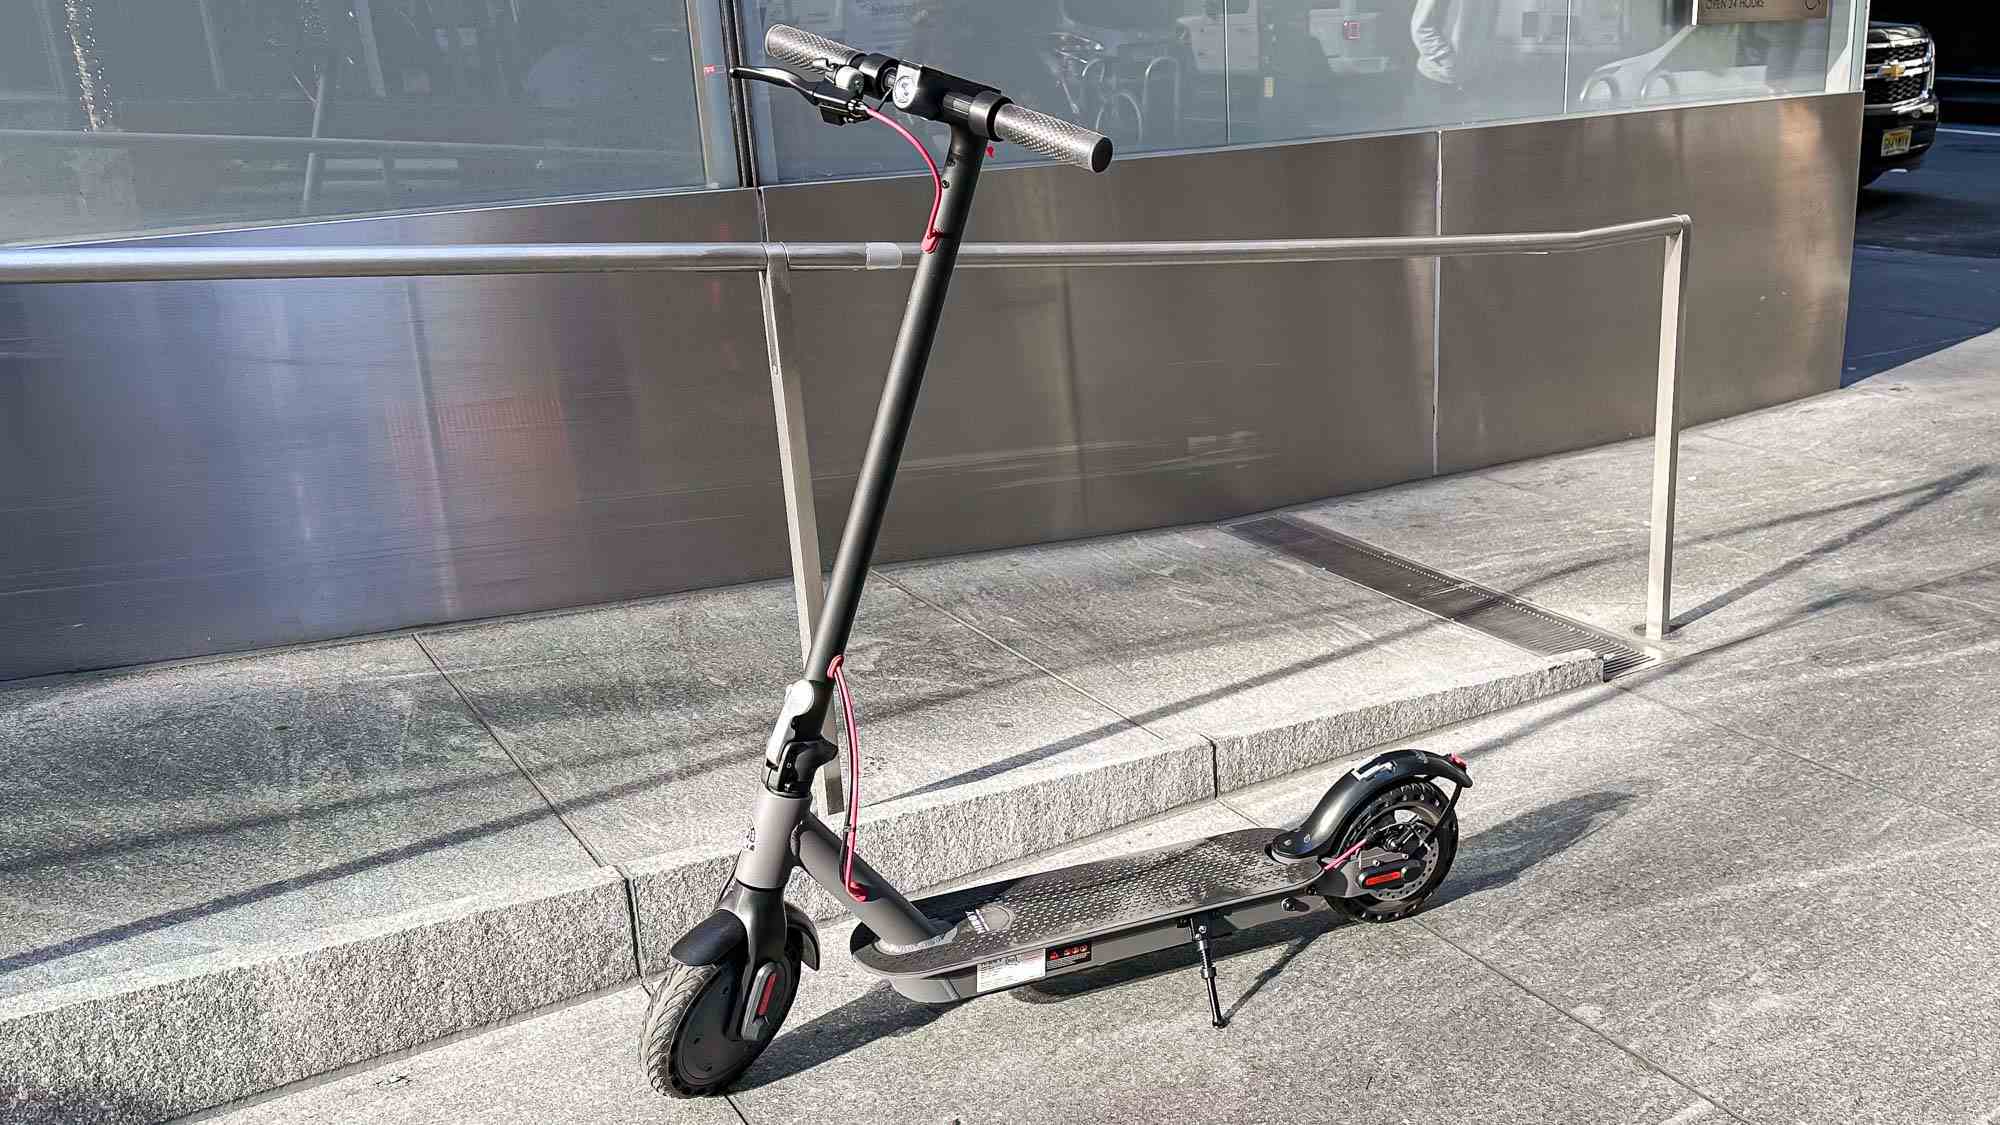 Hiboy S2 scooter kaldırıma park etmiş